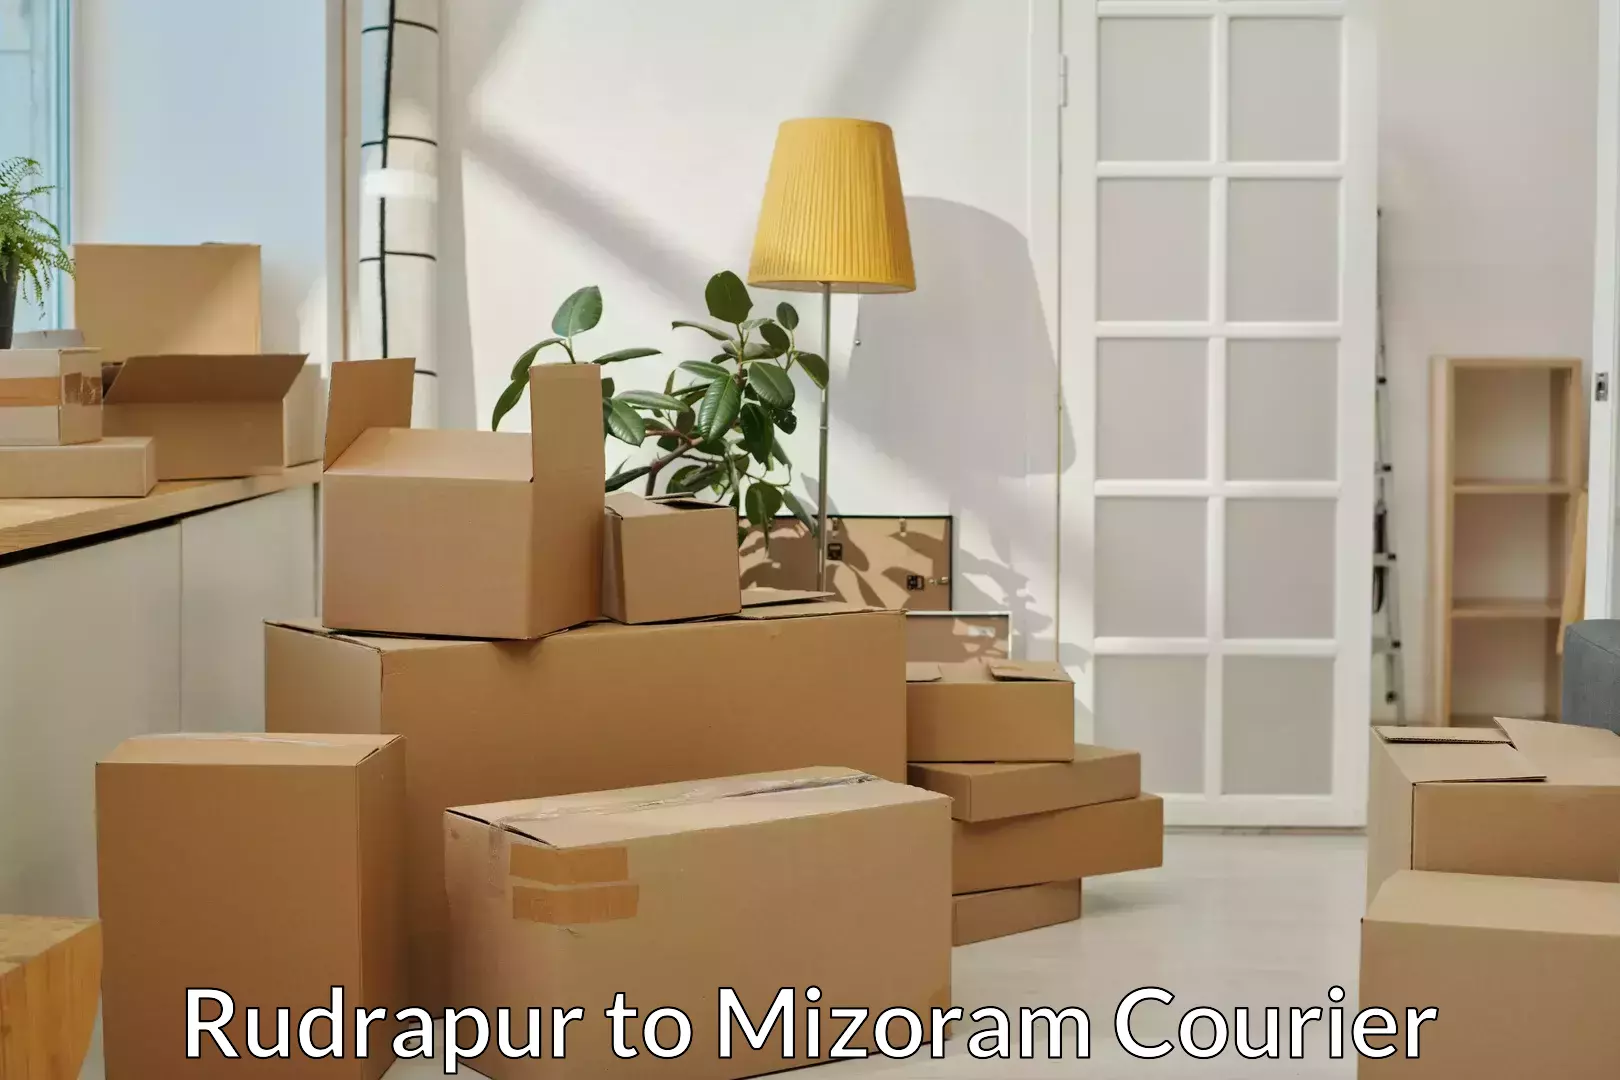 Furniture transport professionals Rudrapur to Mizoram